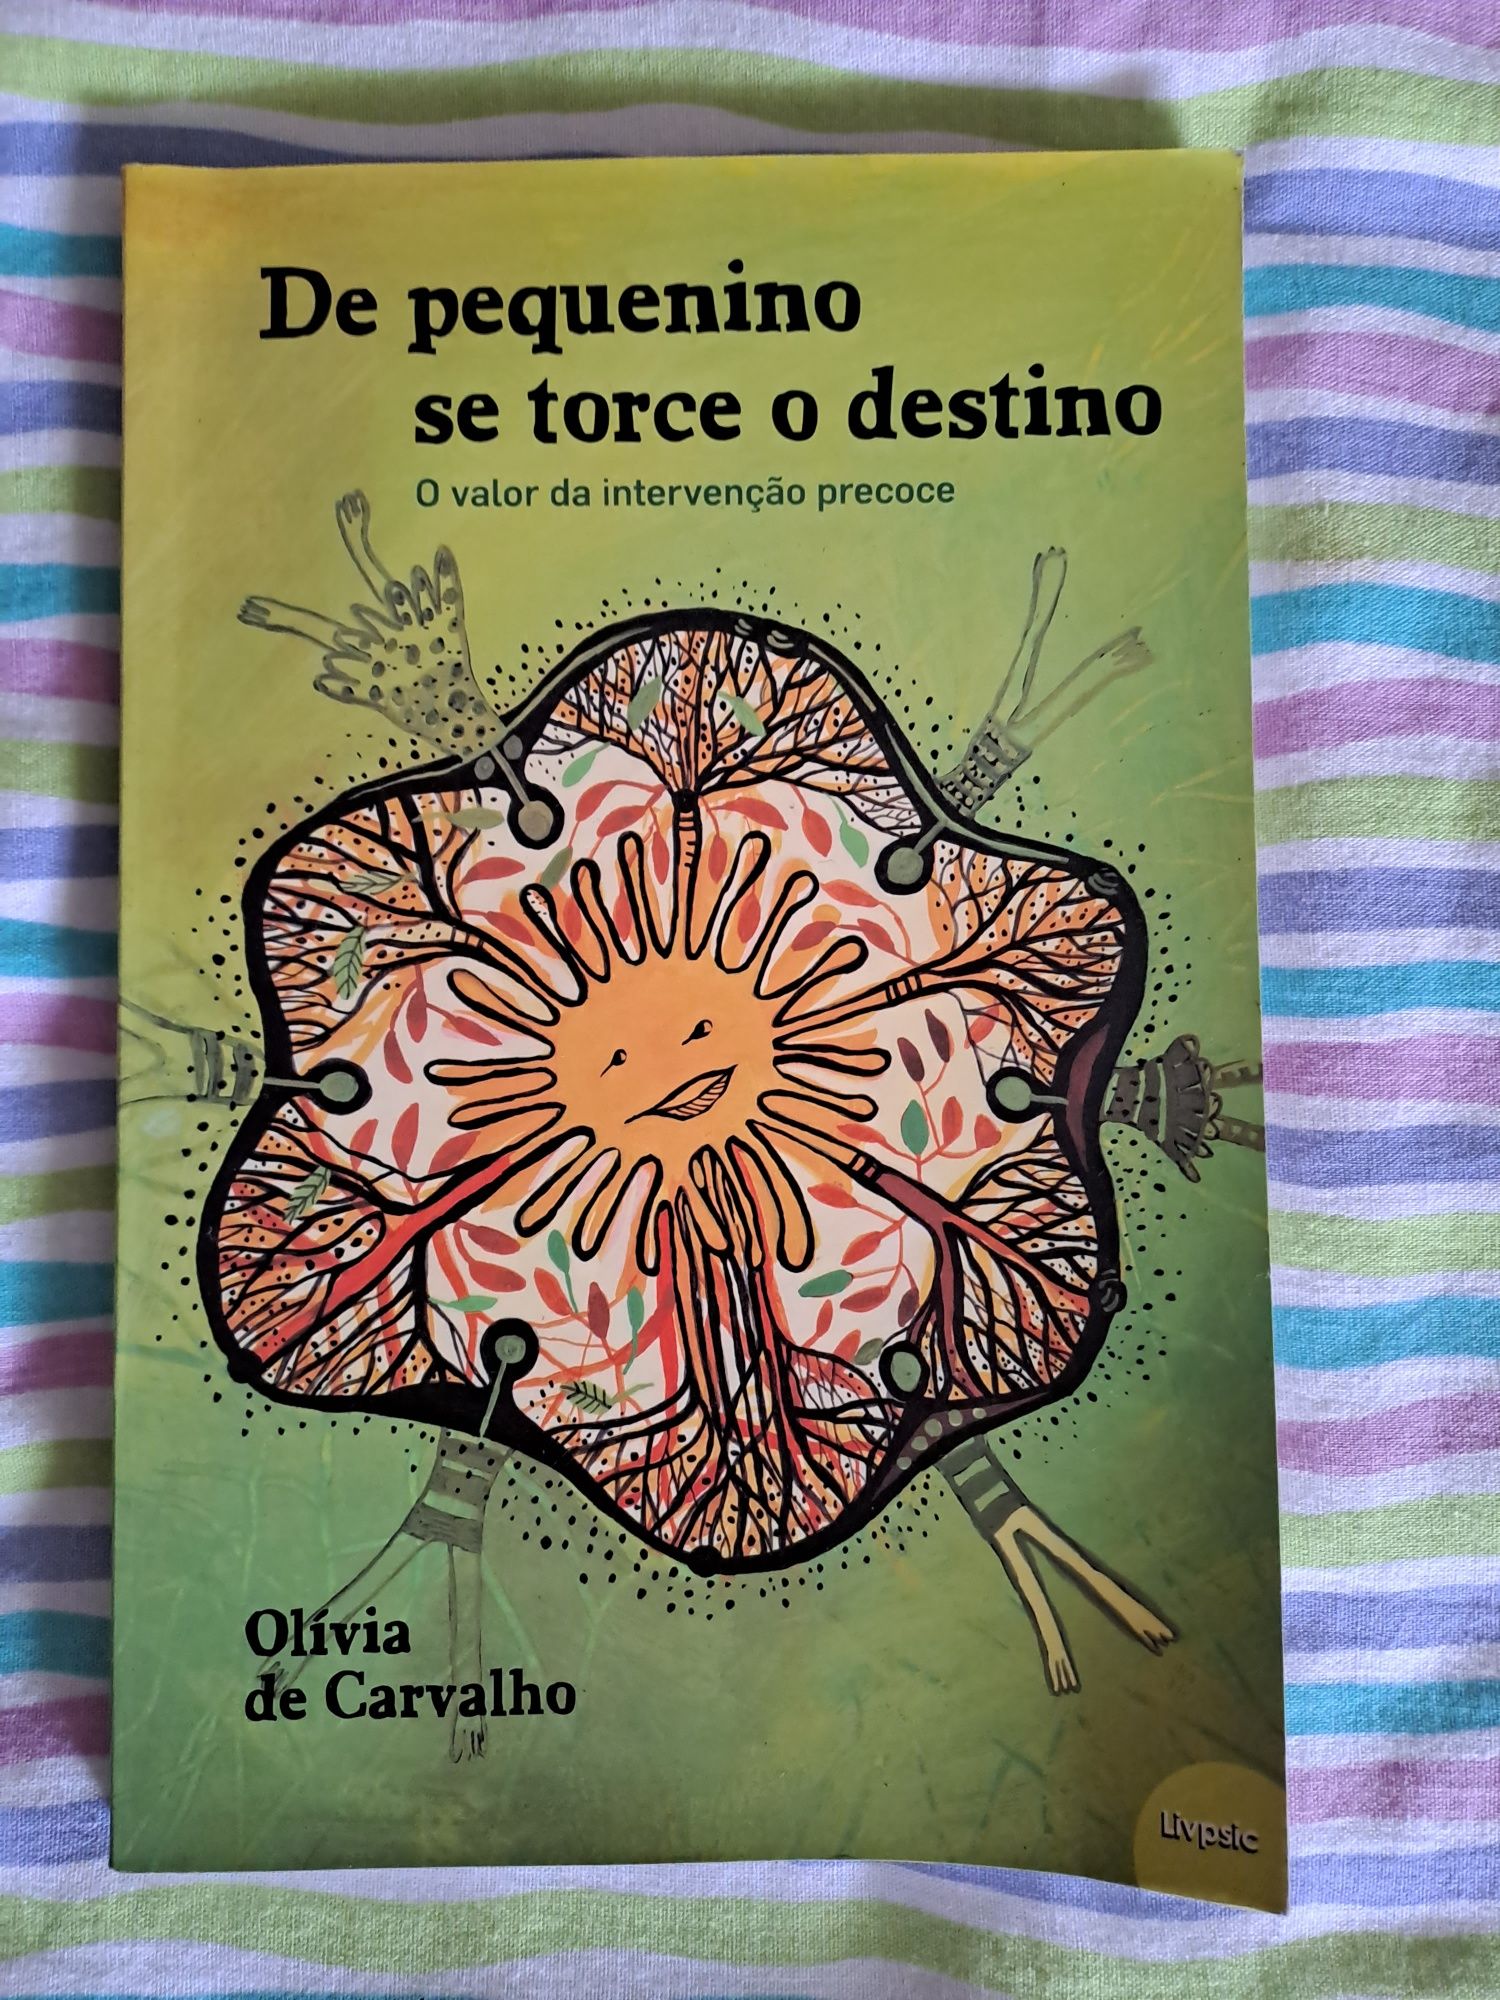 Livro "De pequenino é que se torce o destino" de Olívia de Carvalho